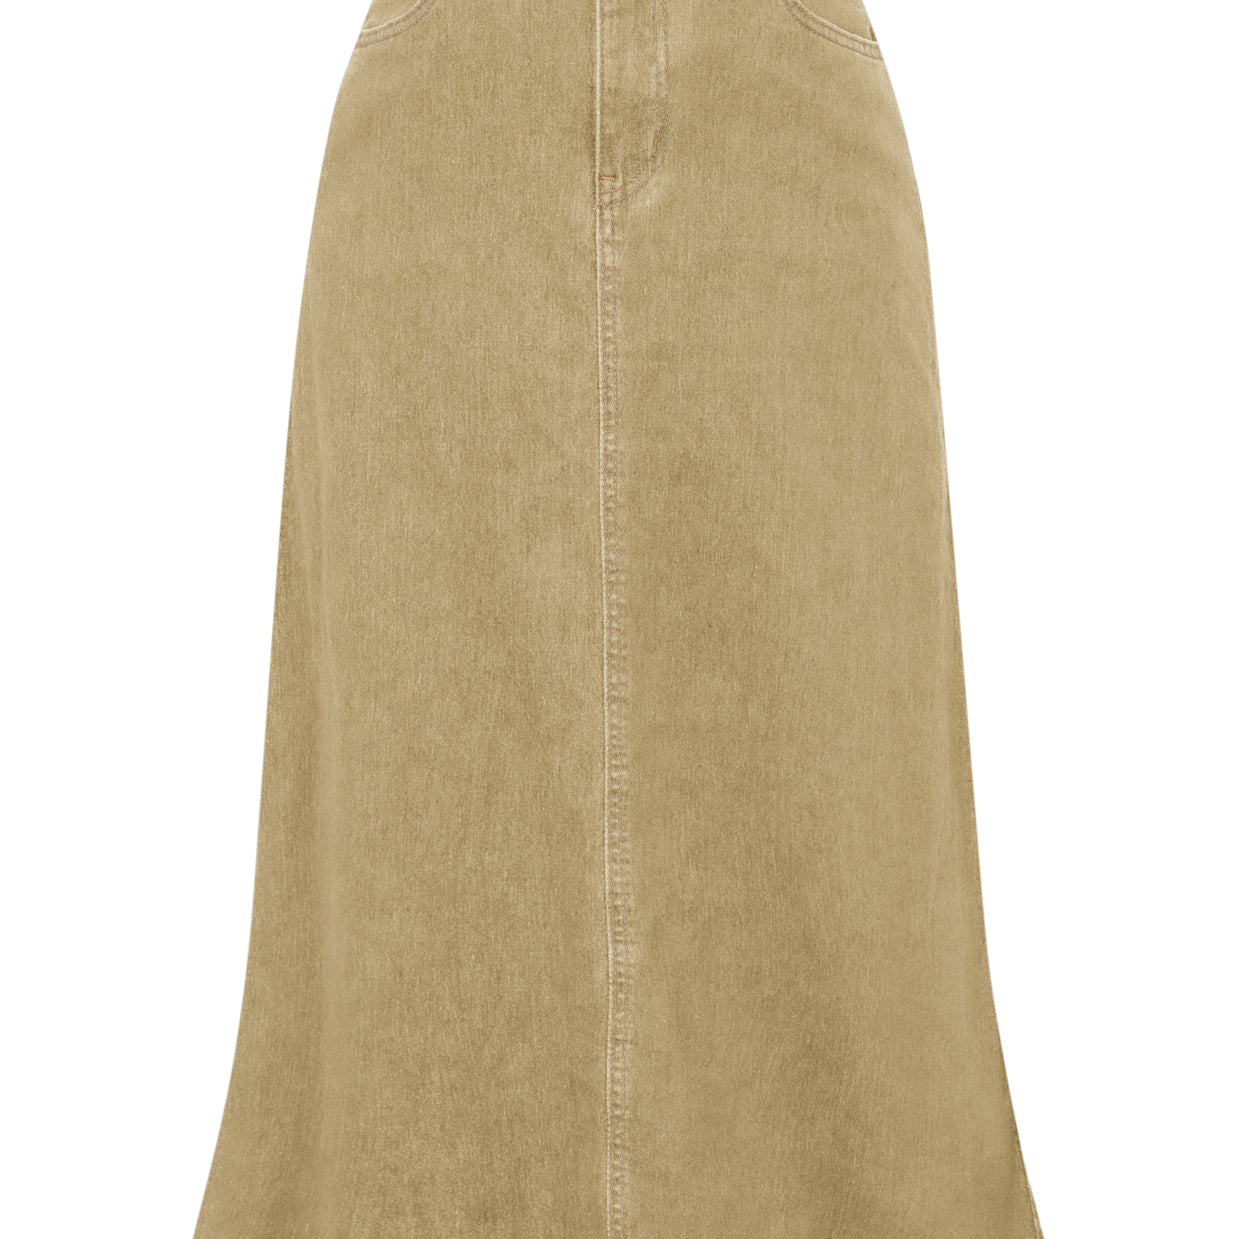 Multi-Pocket Jean Skirt